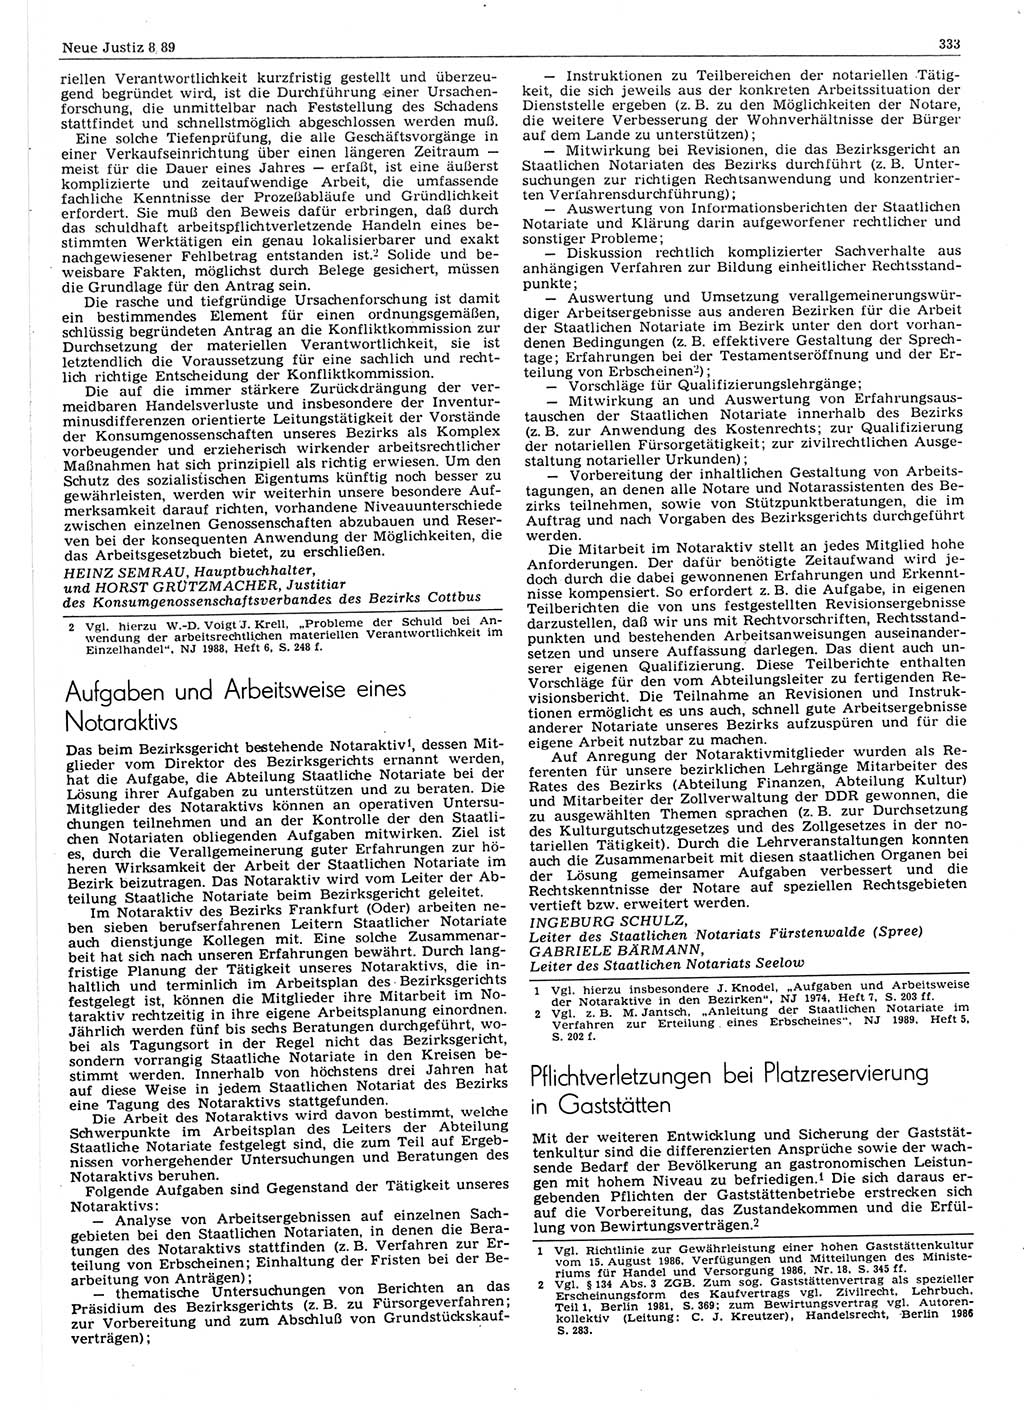 Neue Justiz (NJ), Zeitschrift für sozialistisches Recht und Gesetzlichkeit [Deutsche Demokratische Republik (DDR)], 43. Jahrgang 1989, Seite 333 (NJ DDR 1989, S. 333)